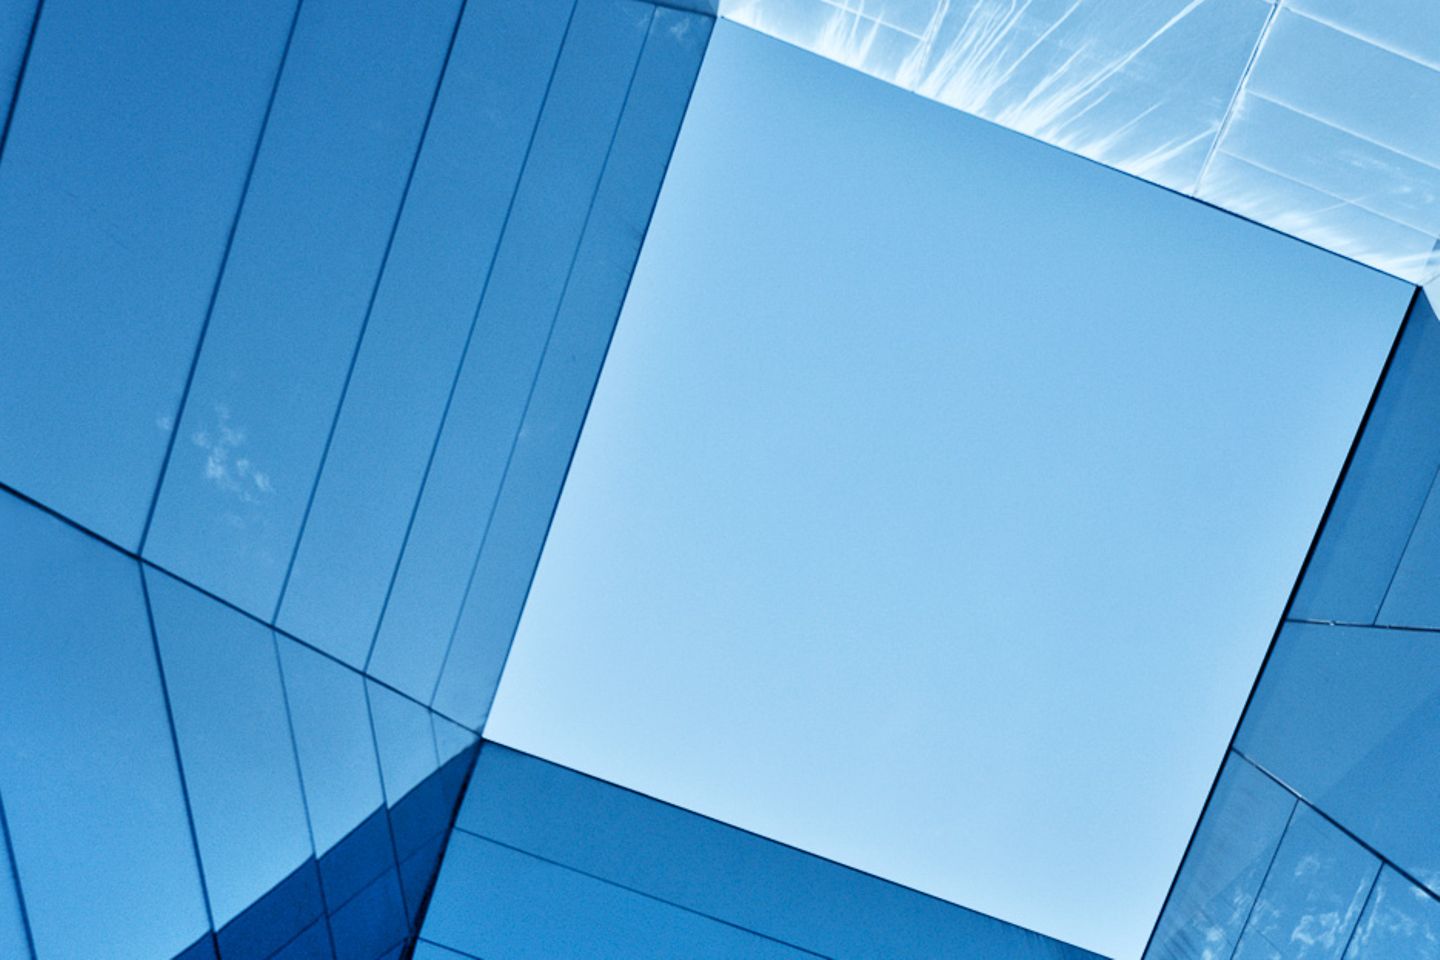 Vista vertical hacia el cielo a través de un prisma de cristal.